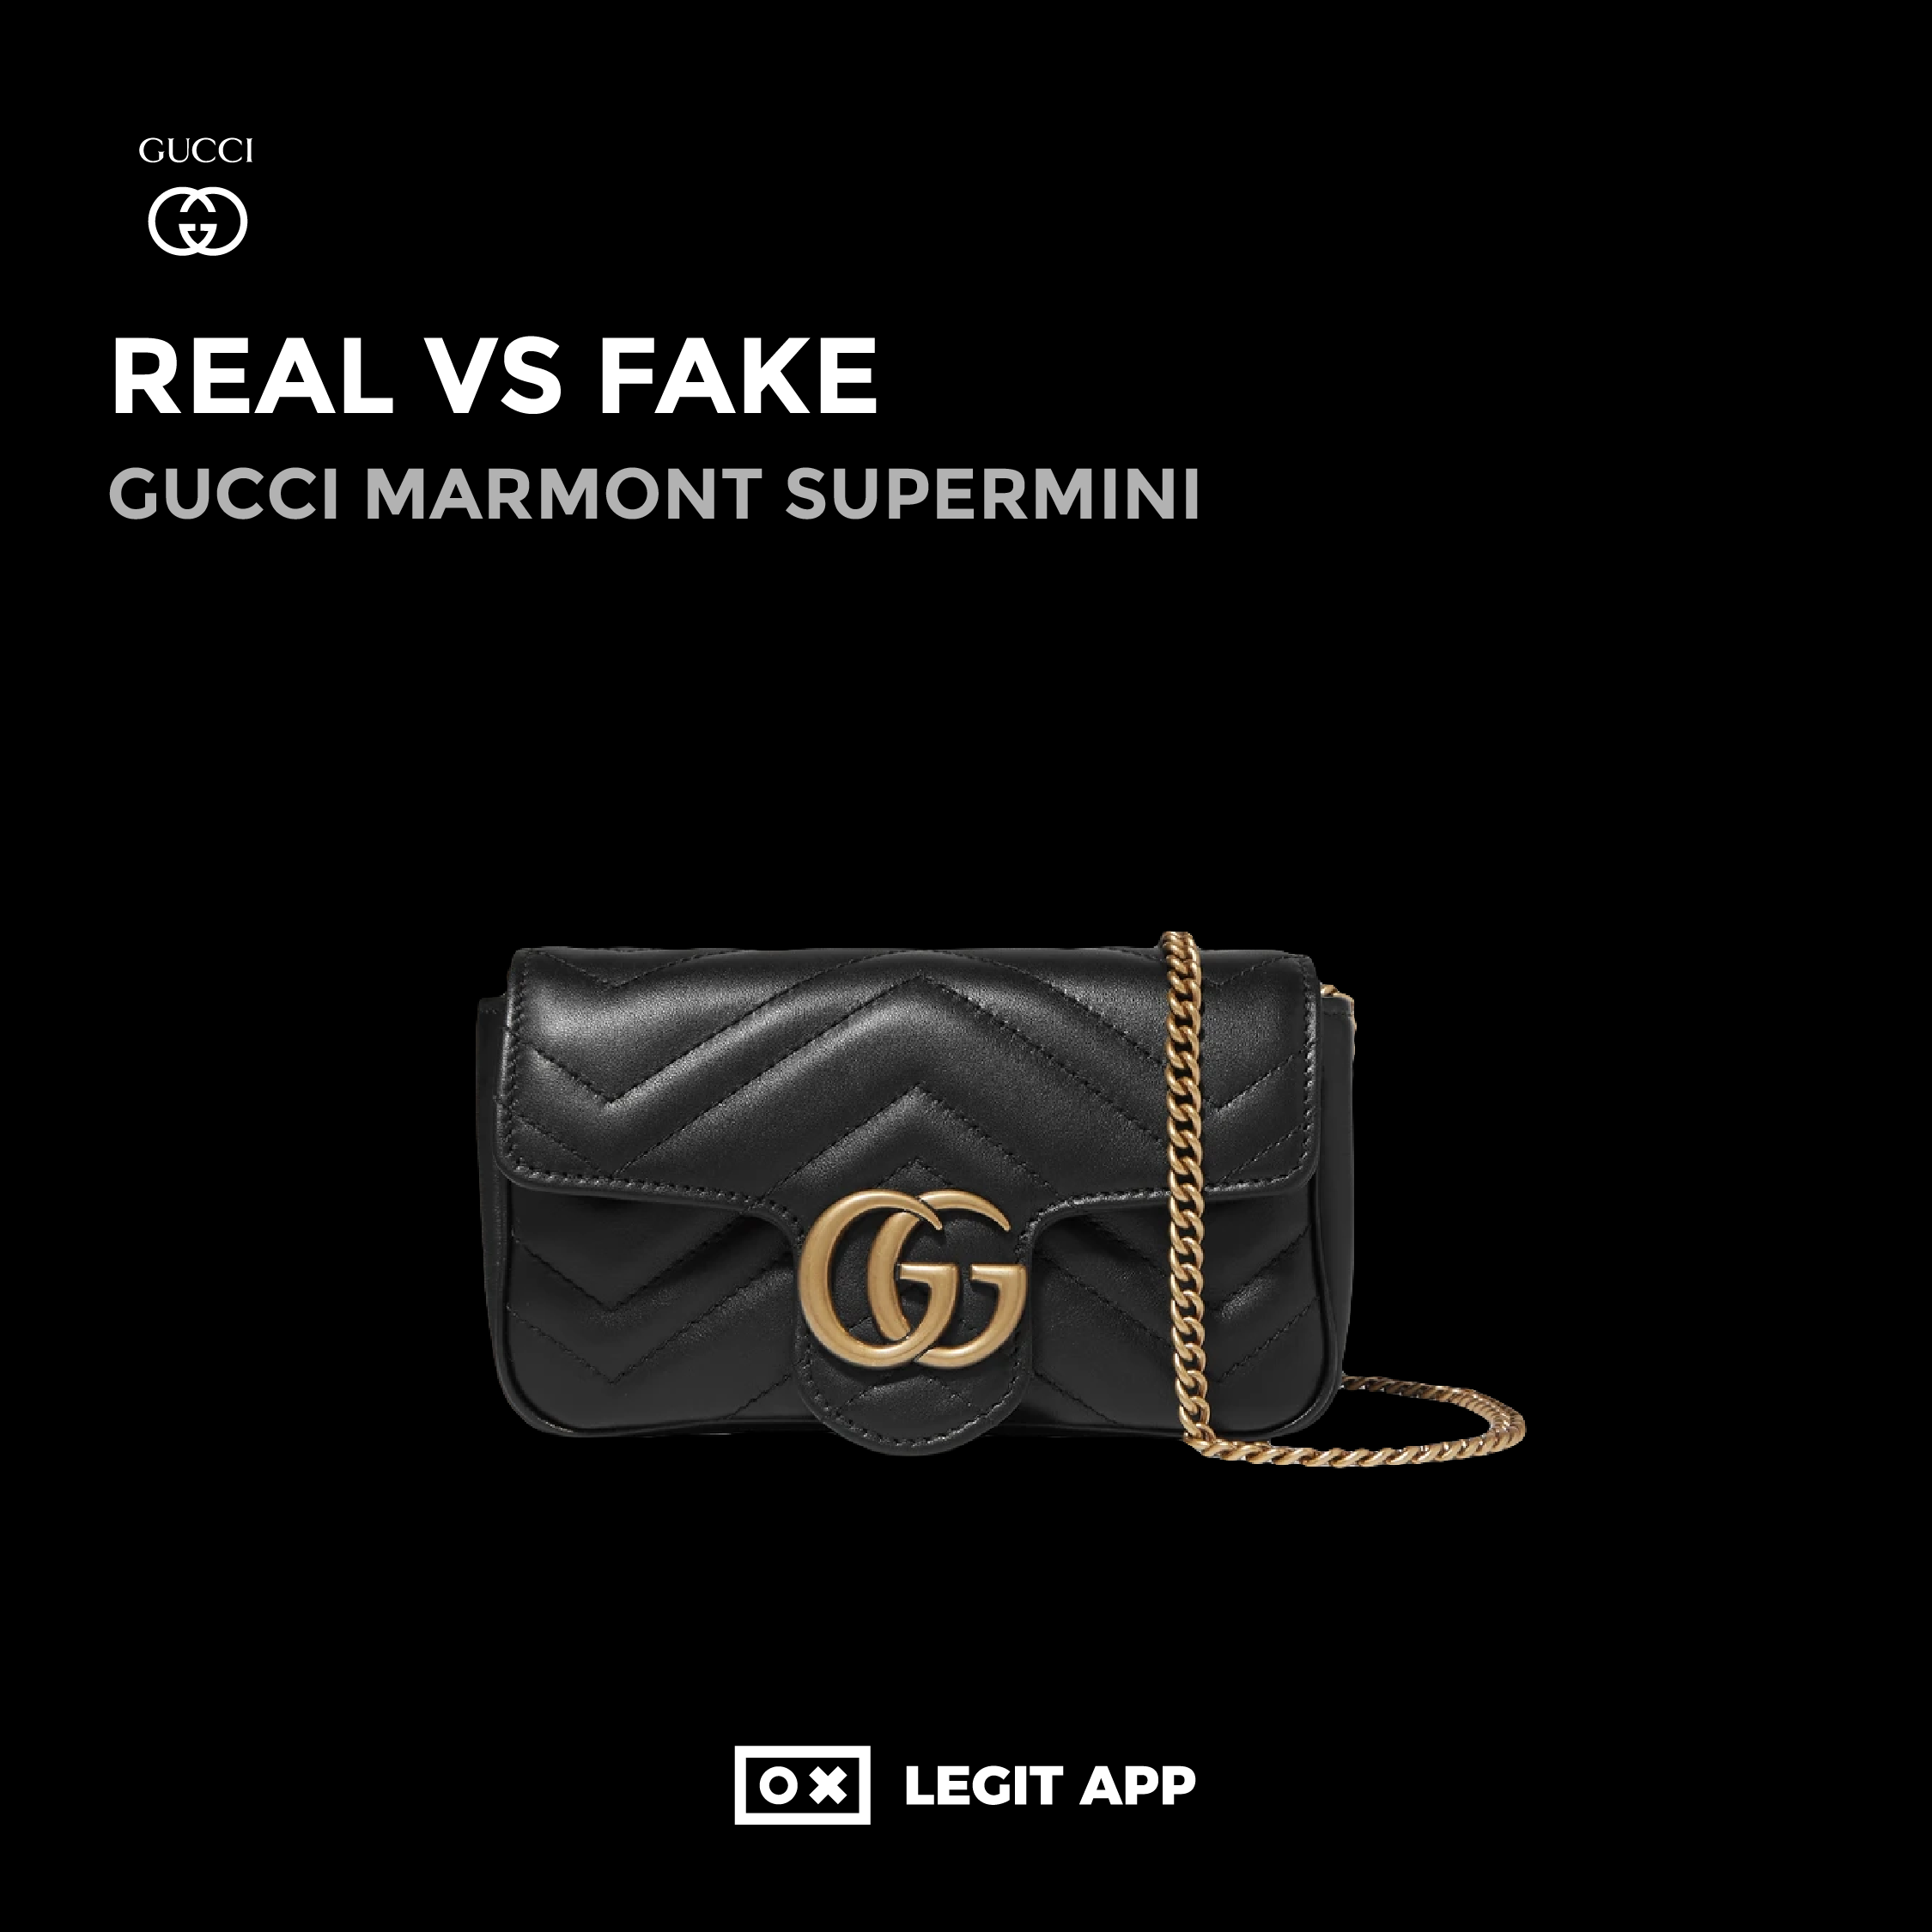 gucci fake vs real bag